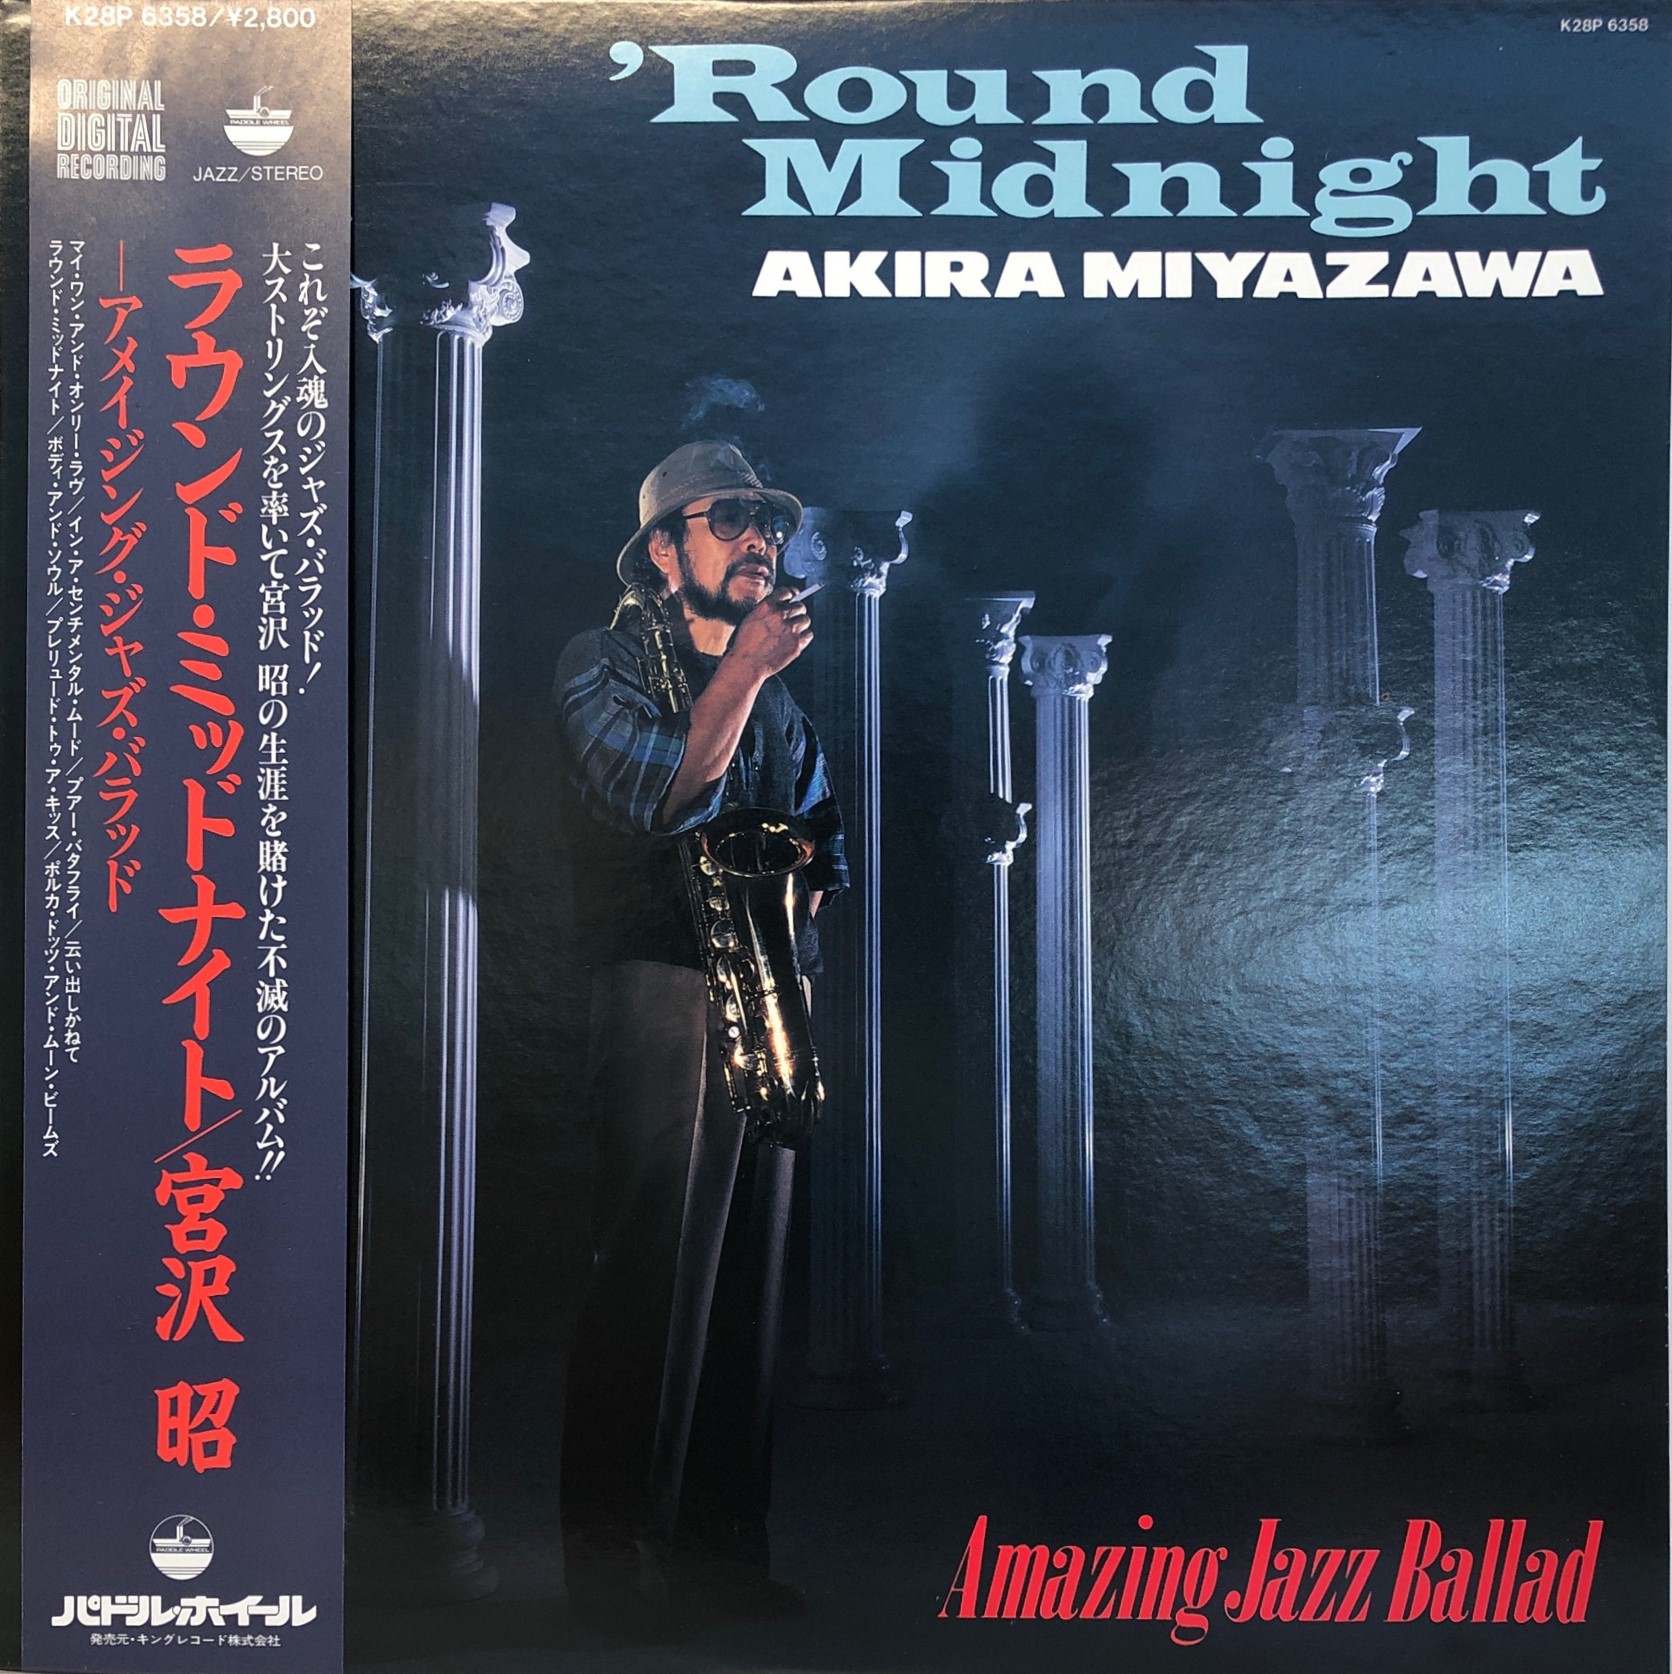 宮沢昭 Round Midnight Amazing Jazz Ballad 中古レコード通販 買取のアカル レコーズ